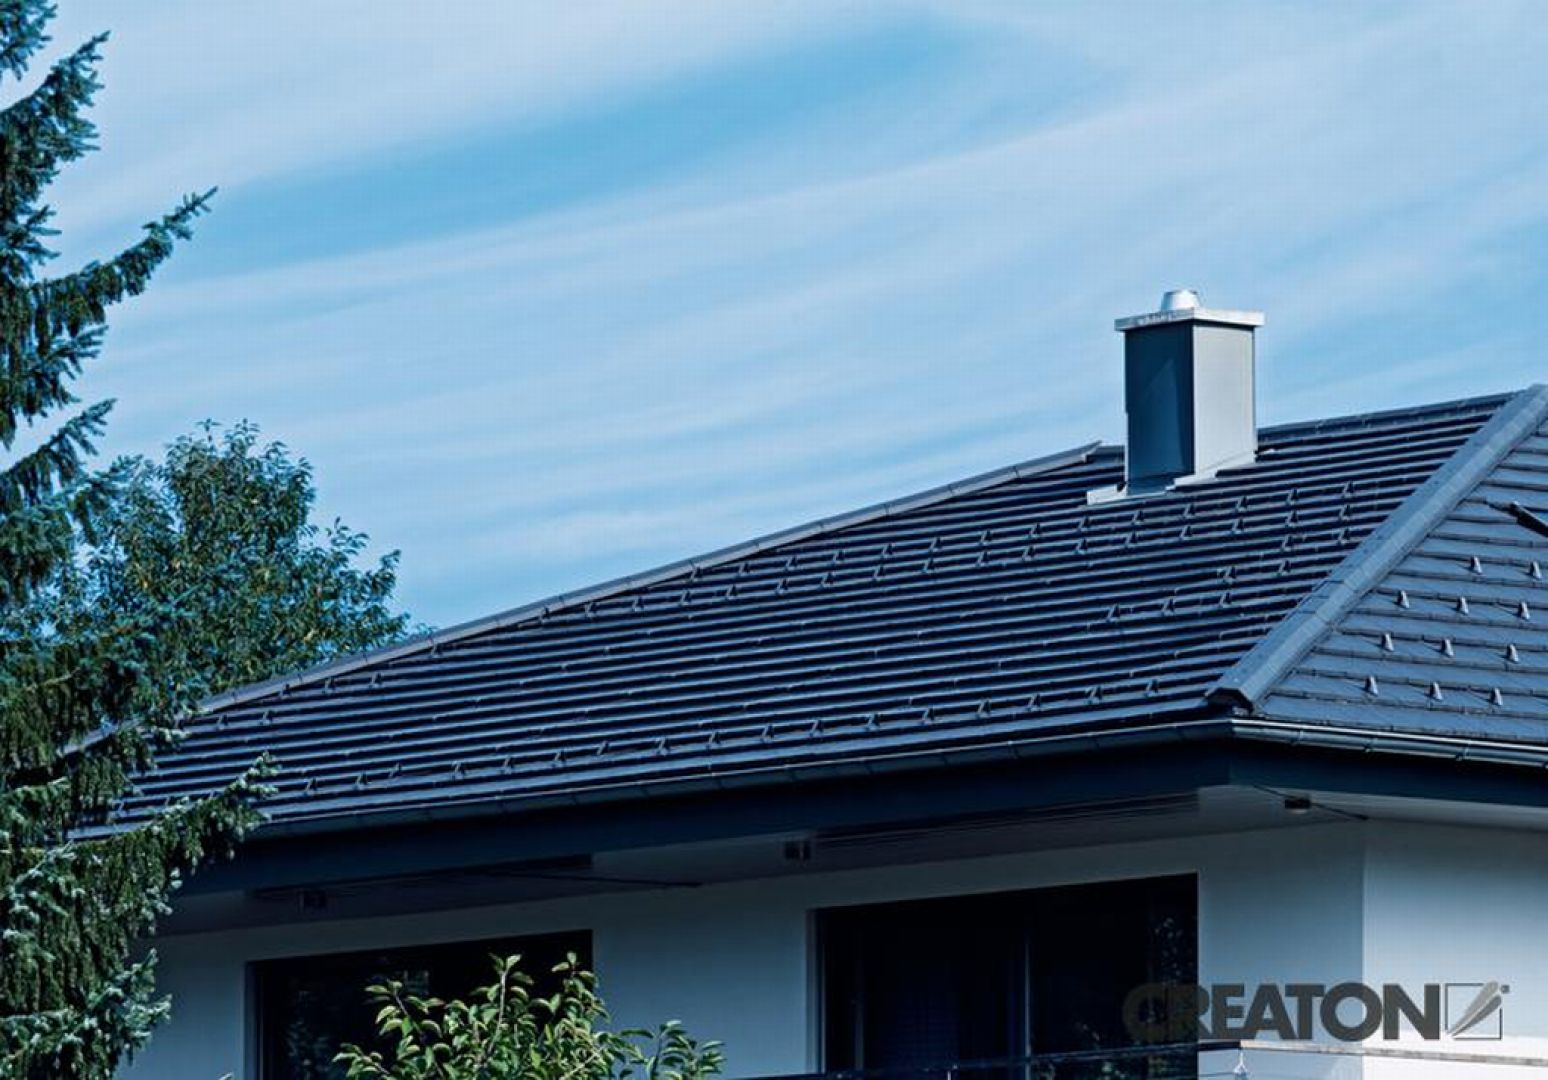 Dachy polskich domów najczęściej wyróżniają się nowoczesnym wykończeniem, często w postaci dachówek płaskich o uproszczonym, prostokątnym kształcie. Fot. Creaton